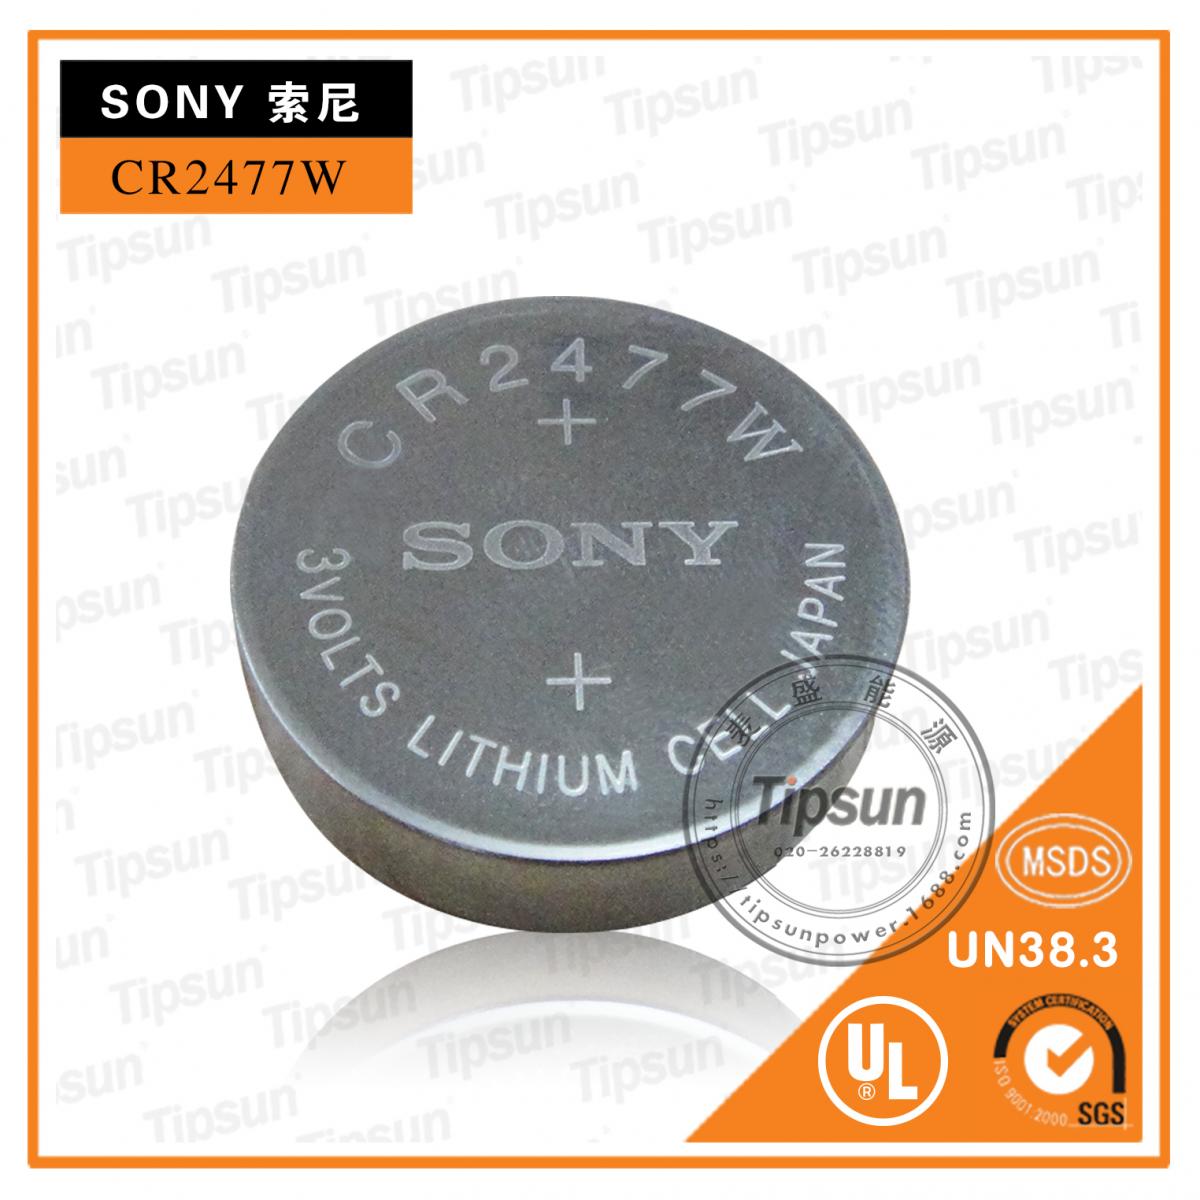 Sony索尼 CR2477W/ 3.0V锂锰电池 光身出货	